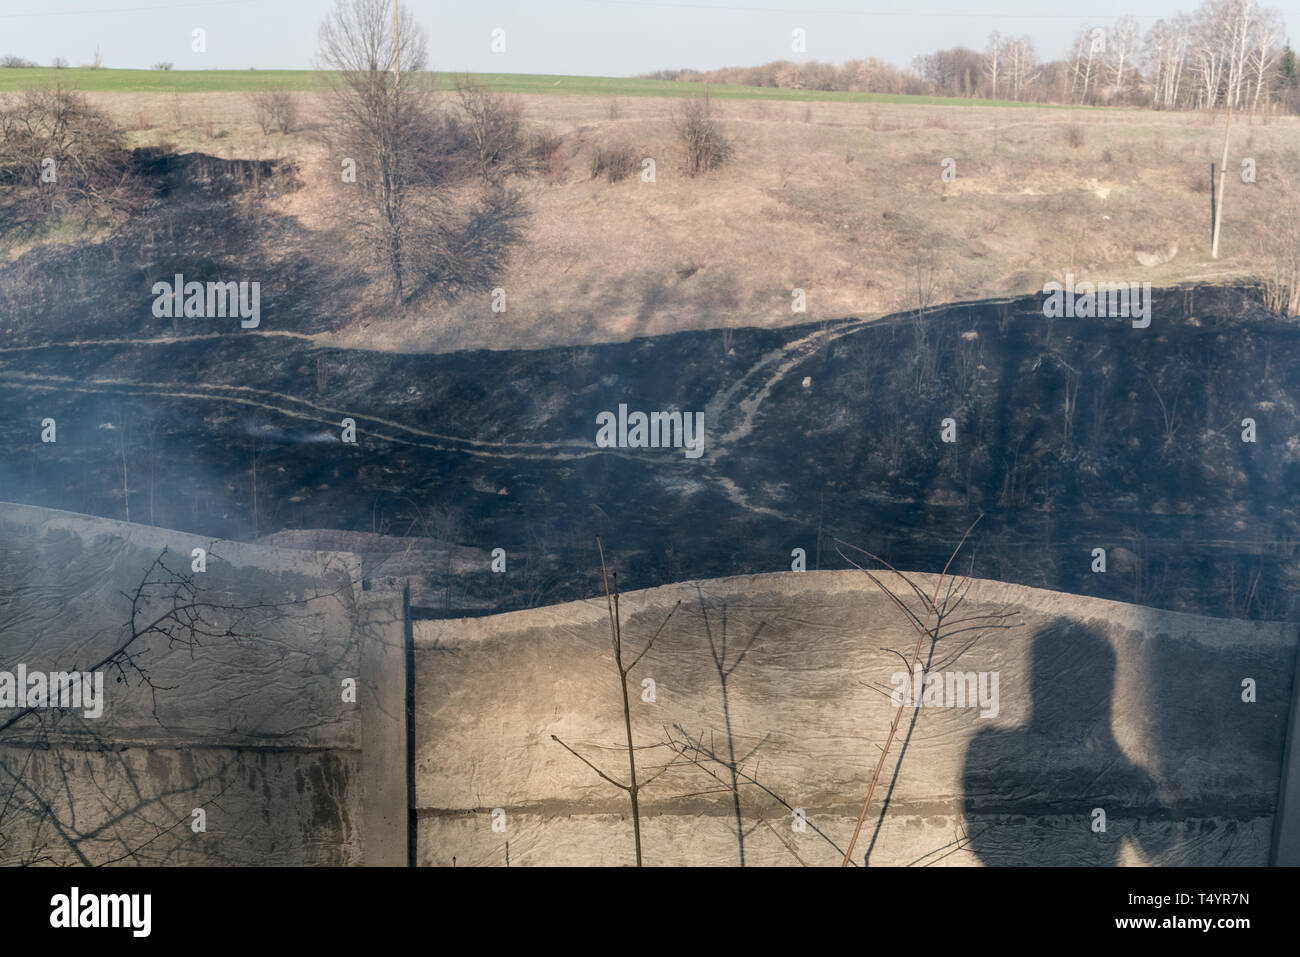 Wildfire, tracce di fuoco in un prato in una valle Foto Stock